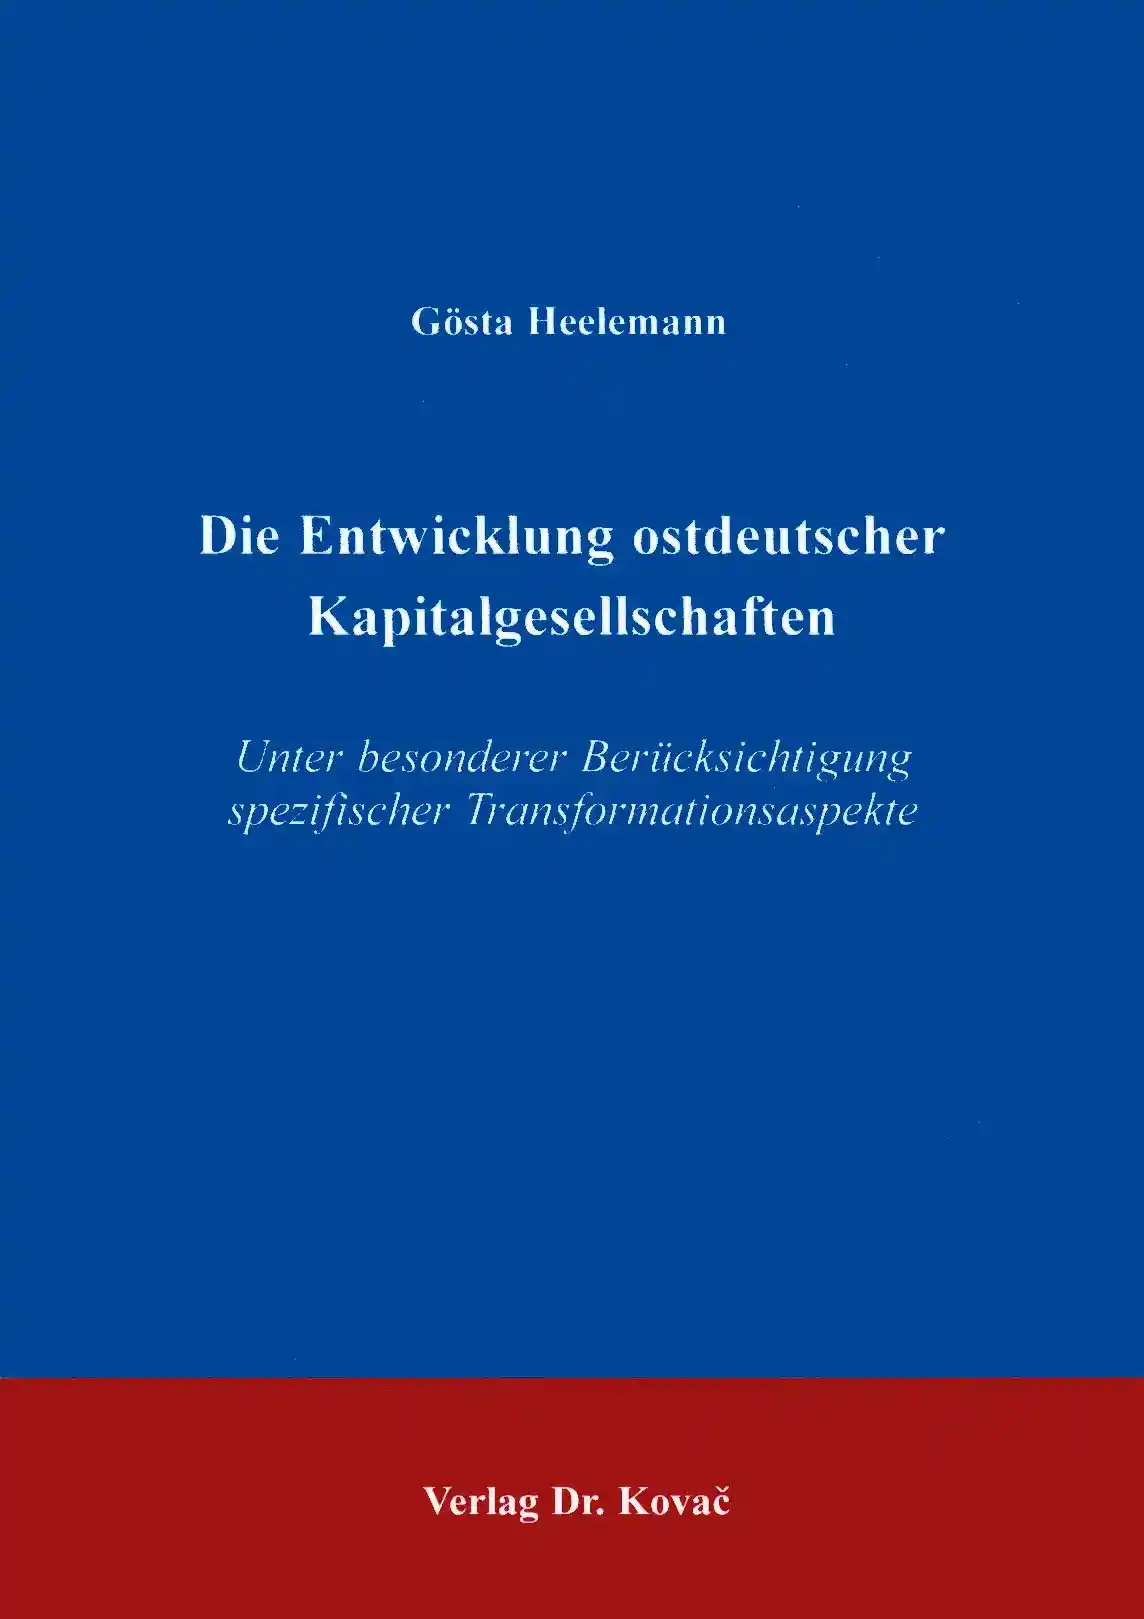 Die Entwicklung ostdeutscher Kapitalgesellschaften unter besonderer Berücksichtigung spezifischer Transformationsaspekte (Doktorarbeit)